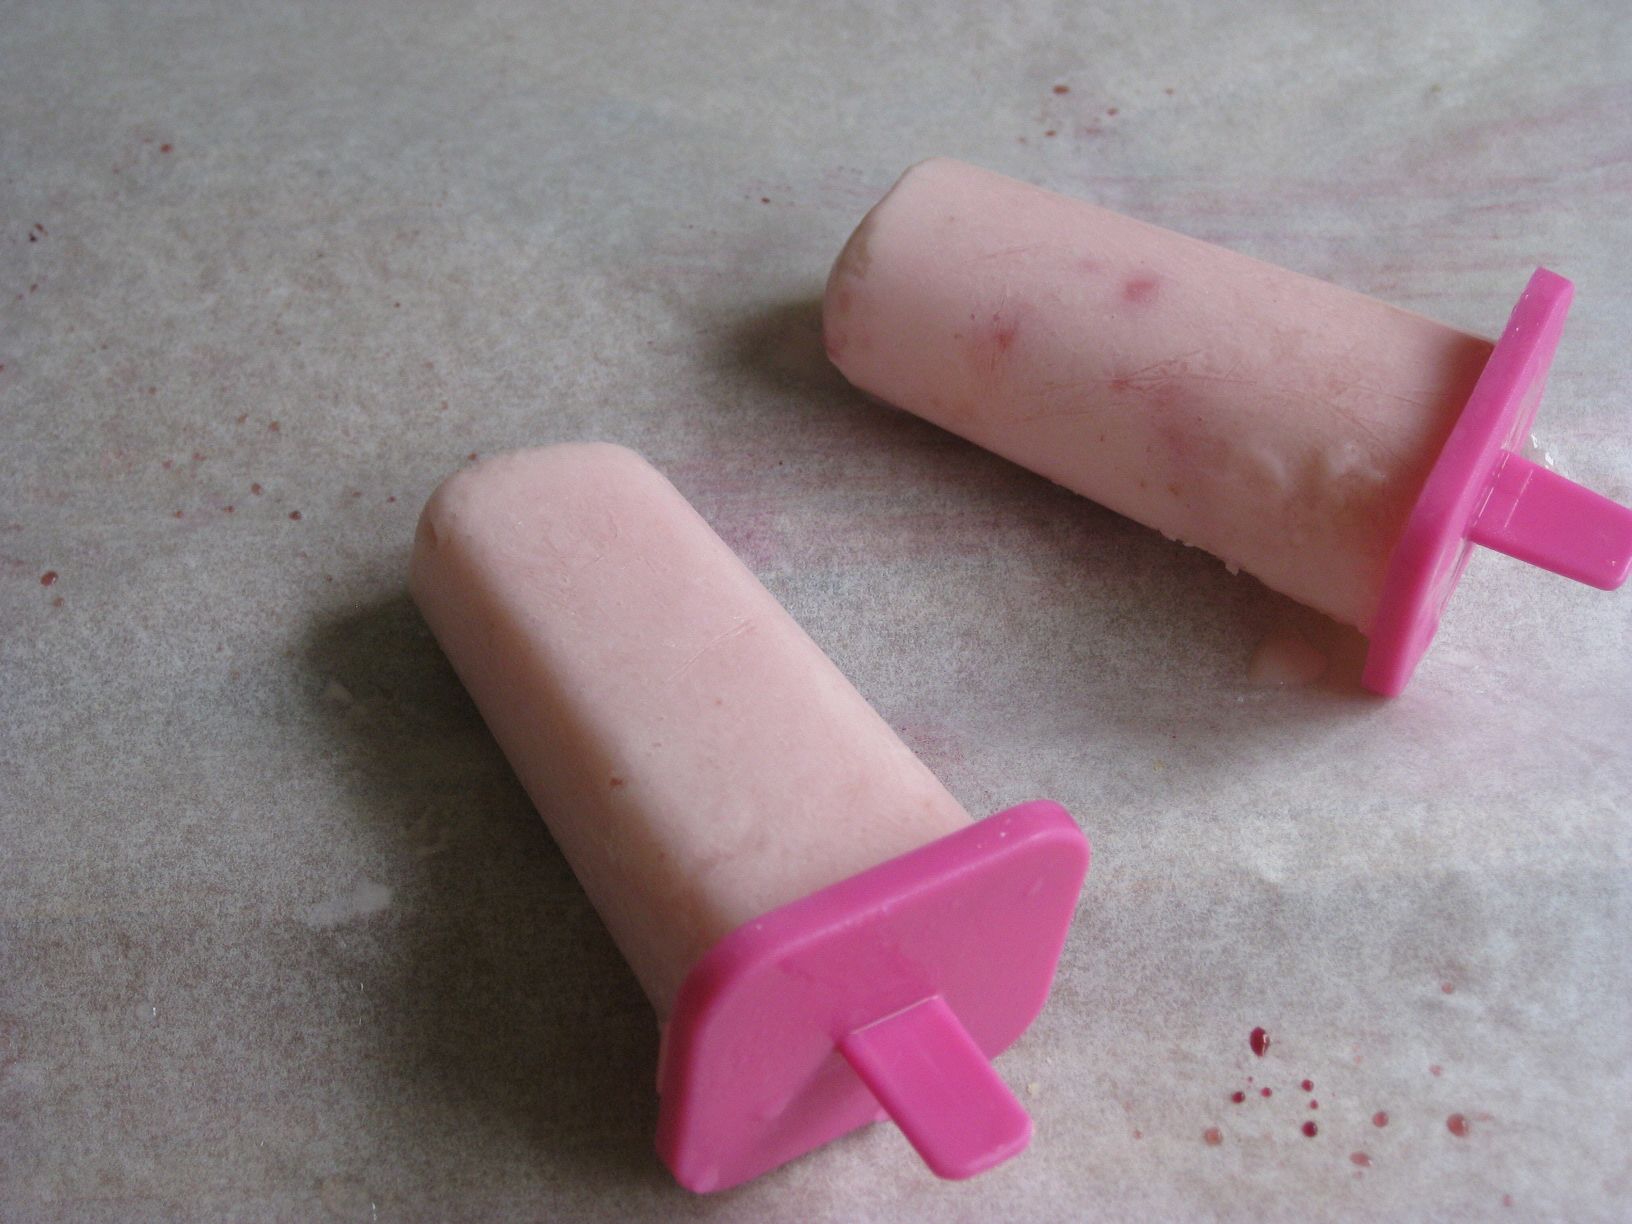 自制芒果酸奶冰淇淋 自制芒果酸奶冰棍_自制芒果酸奶冰淇淋